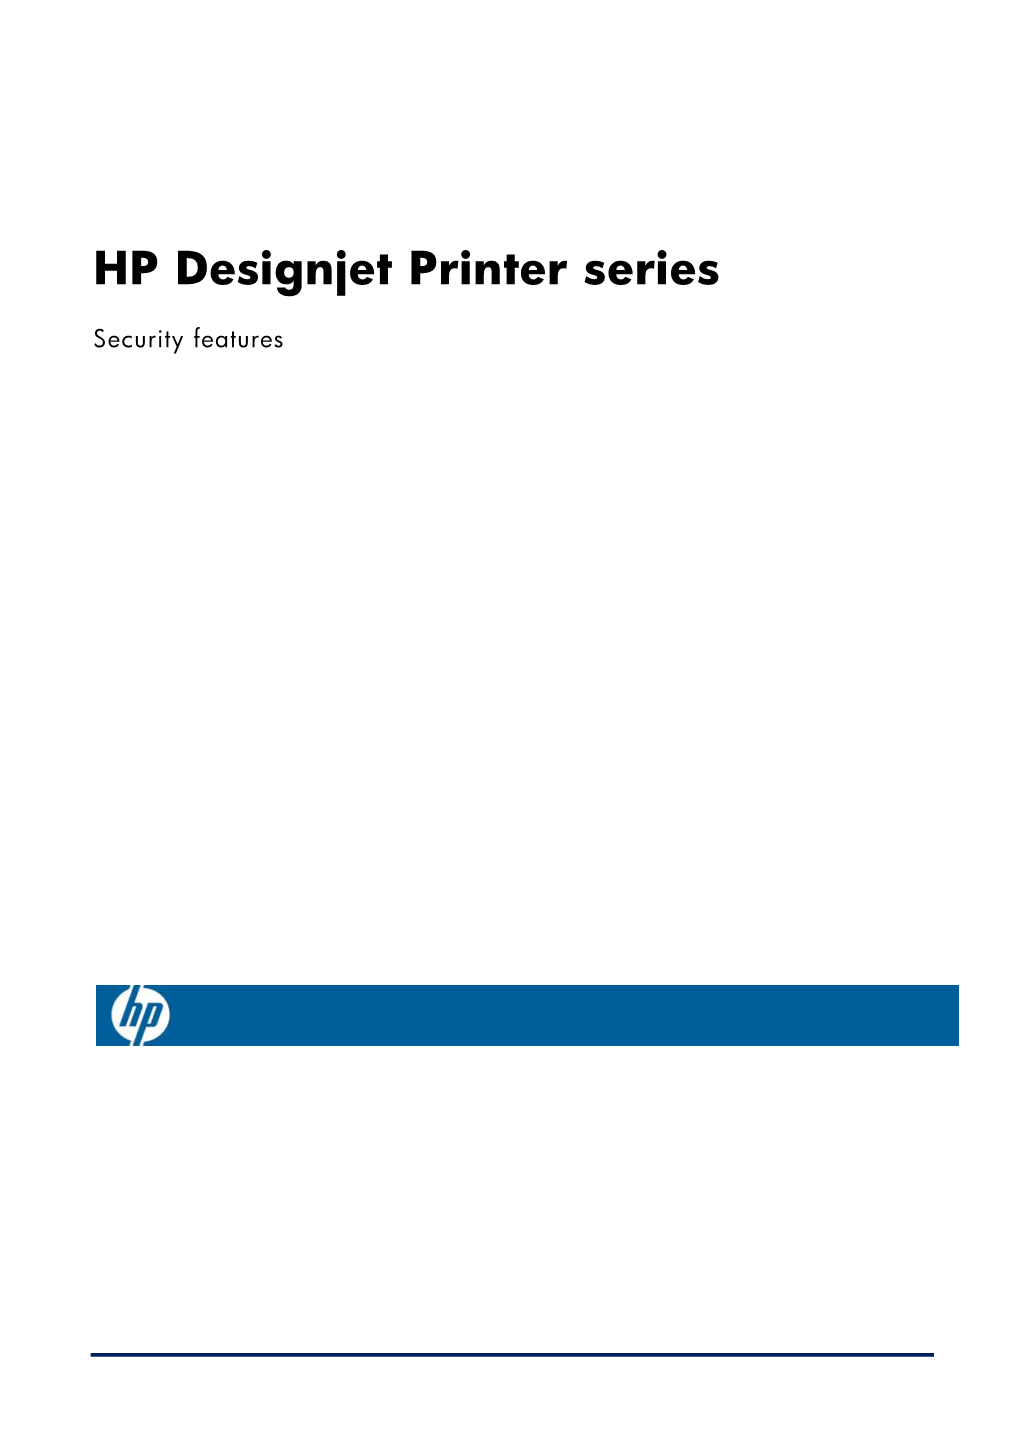 HP Designjet Printer Series